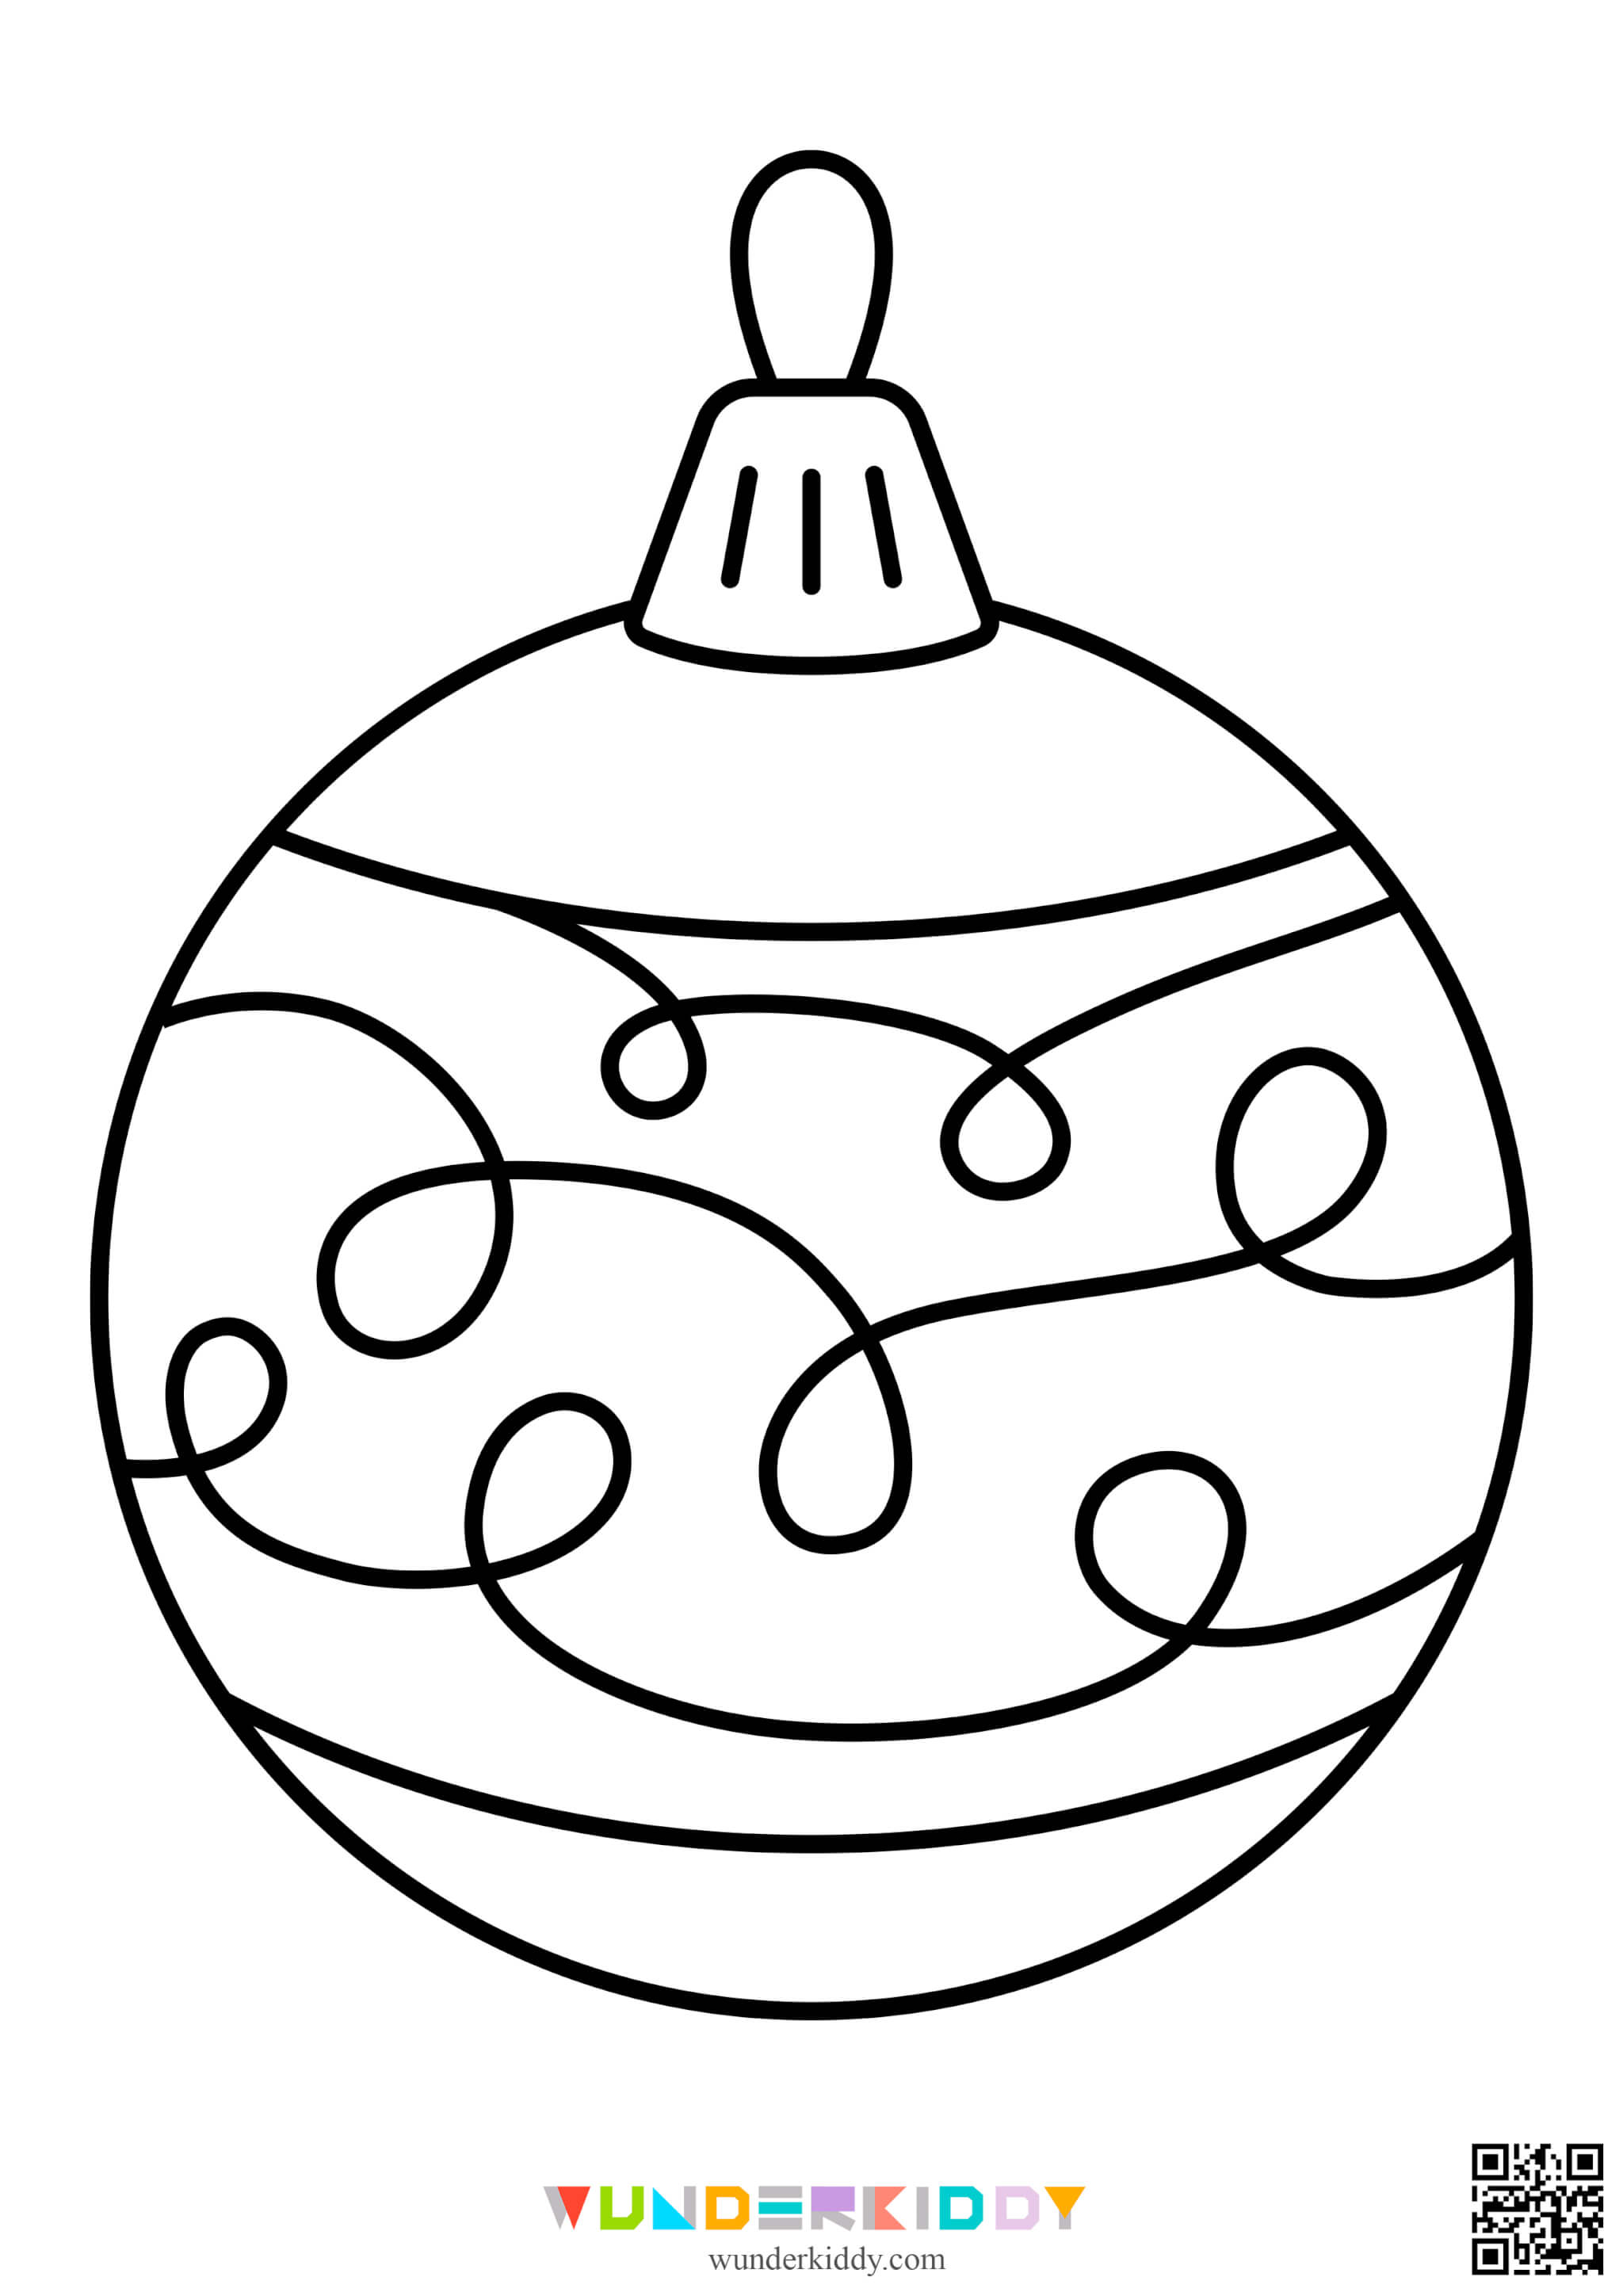 Раскраски ёлочных шаров для детей - Изображение 16